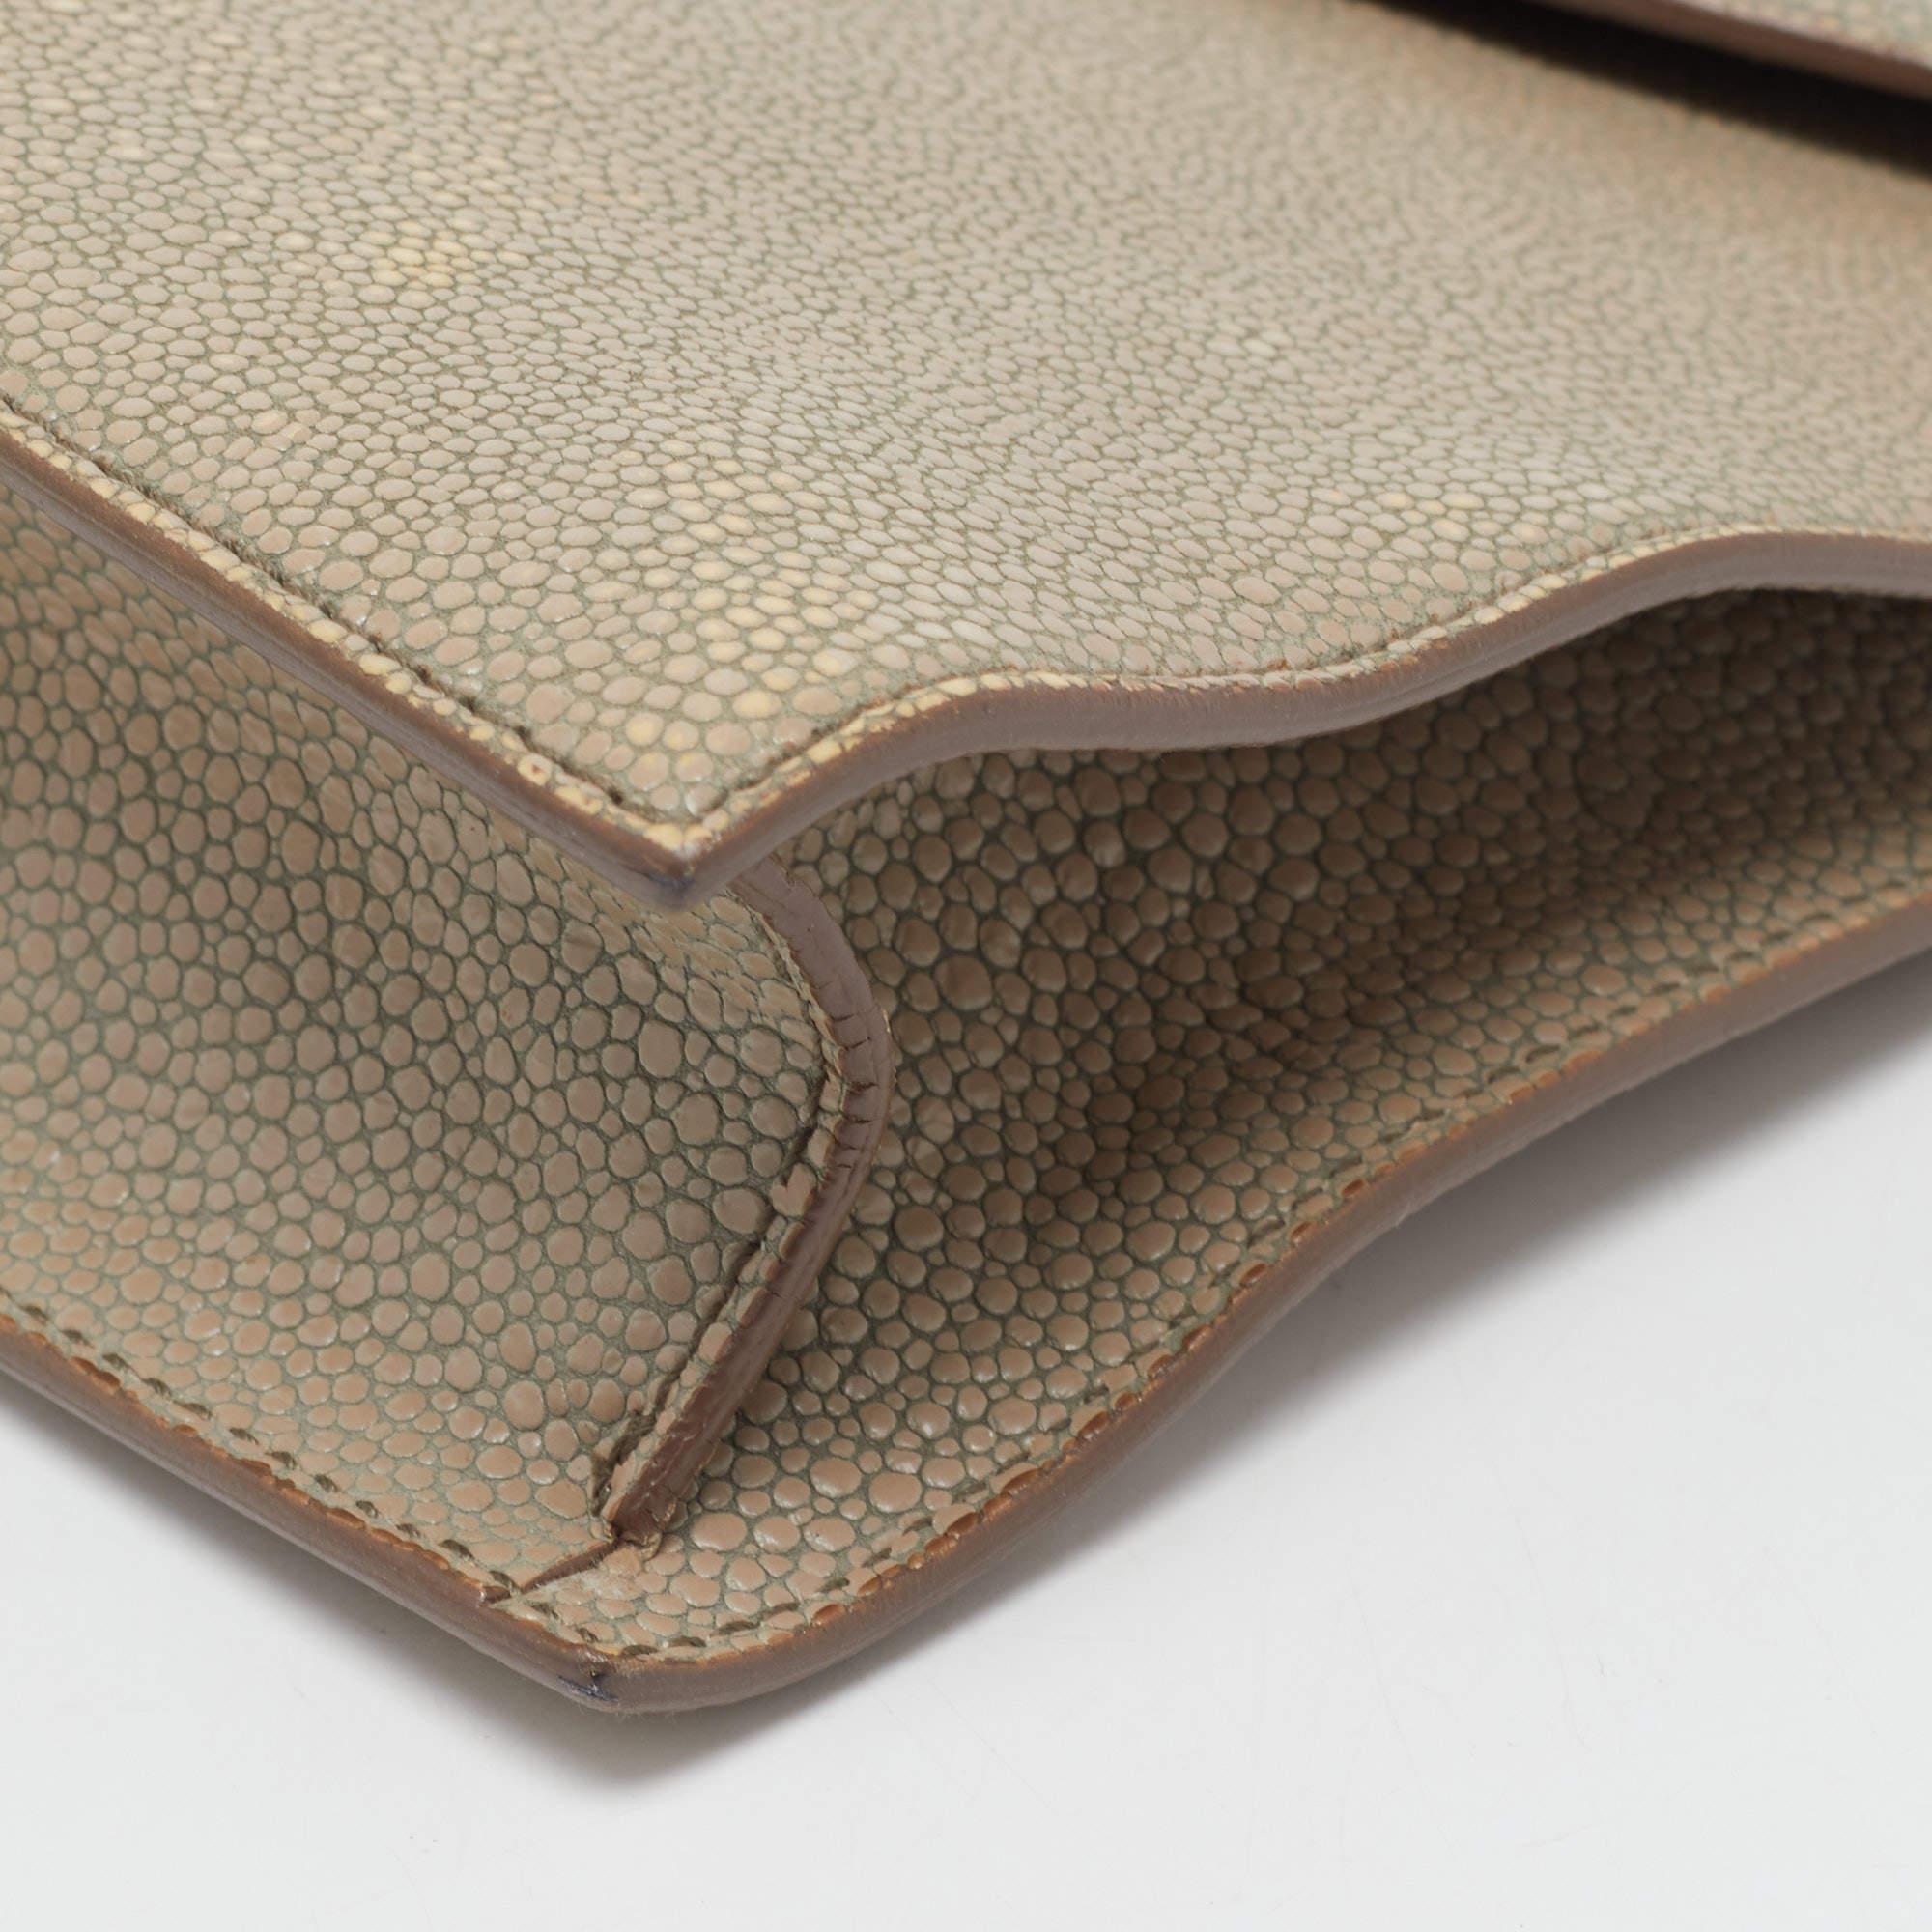 Women's Yves Saint Laurent Khaki Stingray Embossed Leather Envelope Clutch